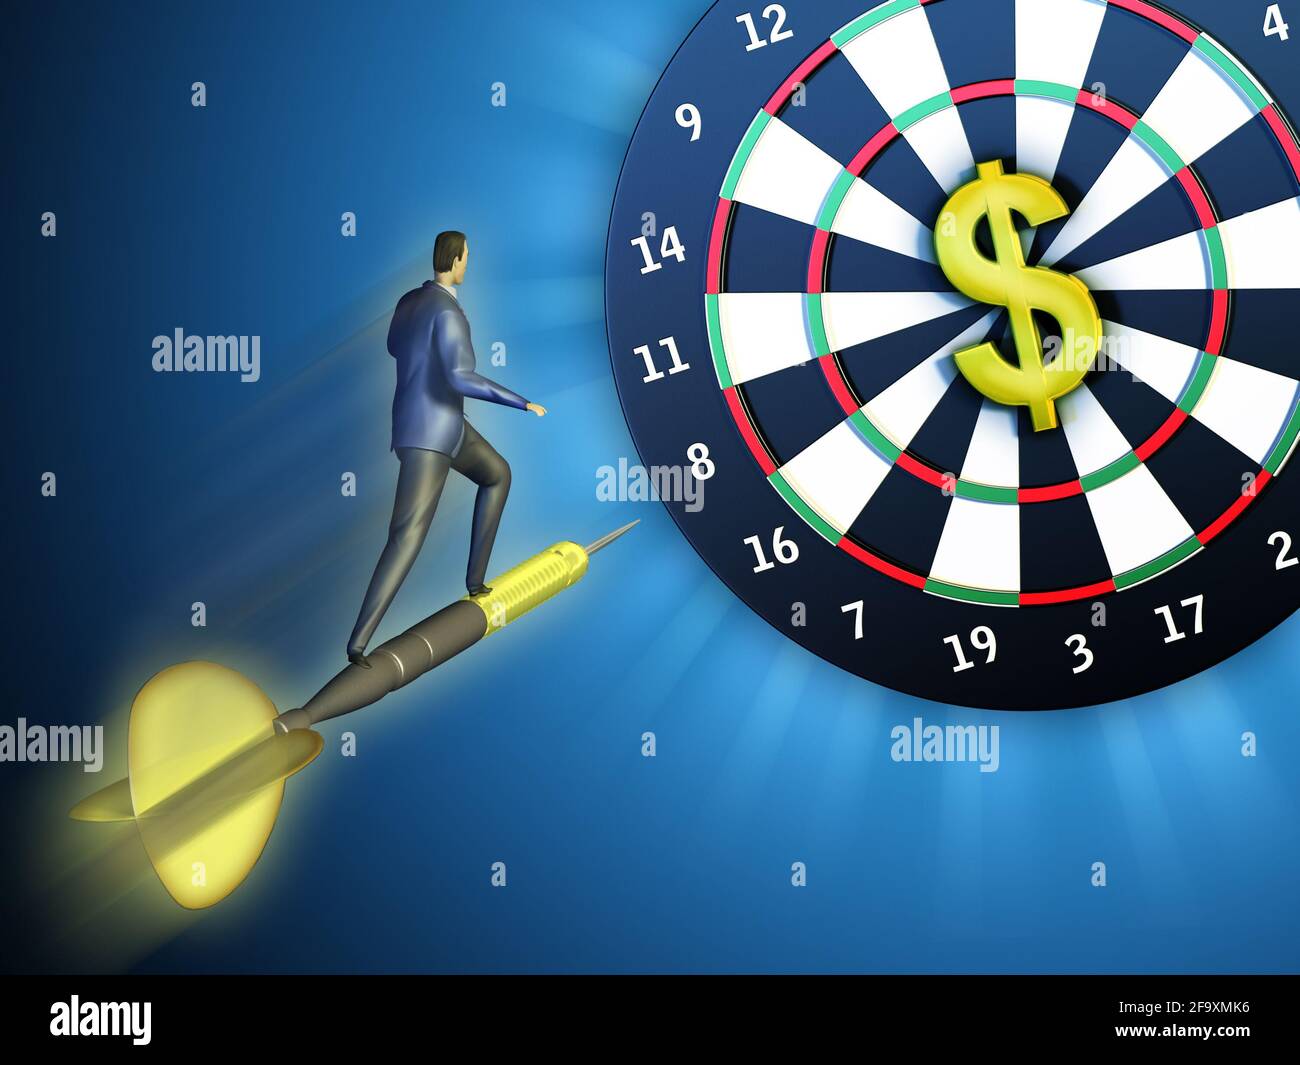 Uomo d'affari su un freccette volante sta colpendo un bordo in cui il punteggio più alto è rappresentato da un dollaro. Illustrazione digitale. Foto Stock